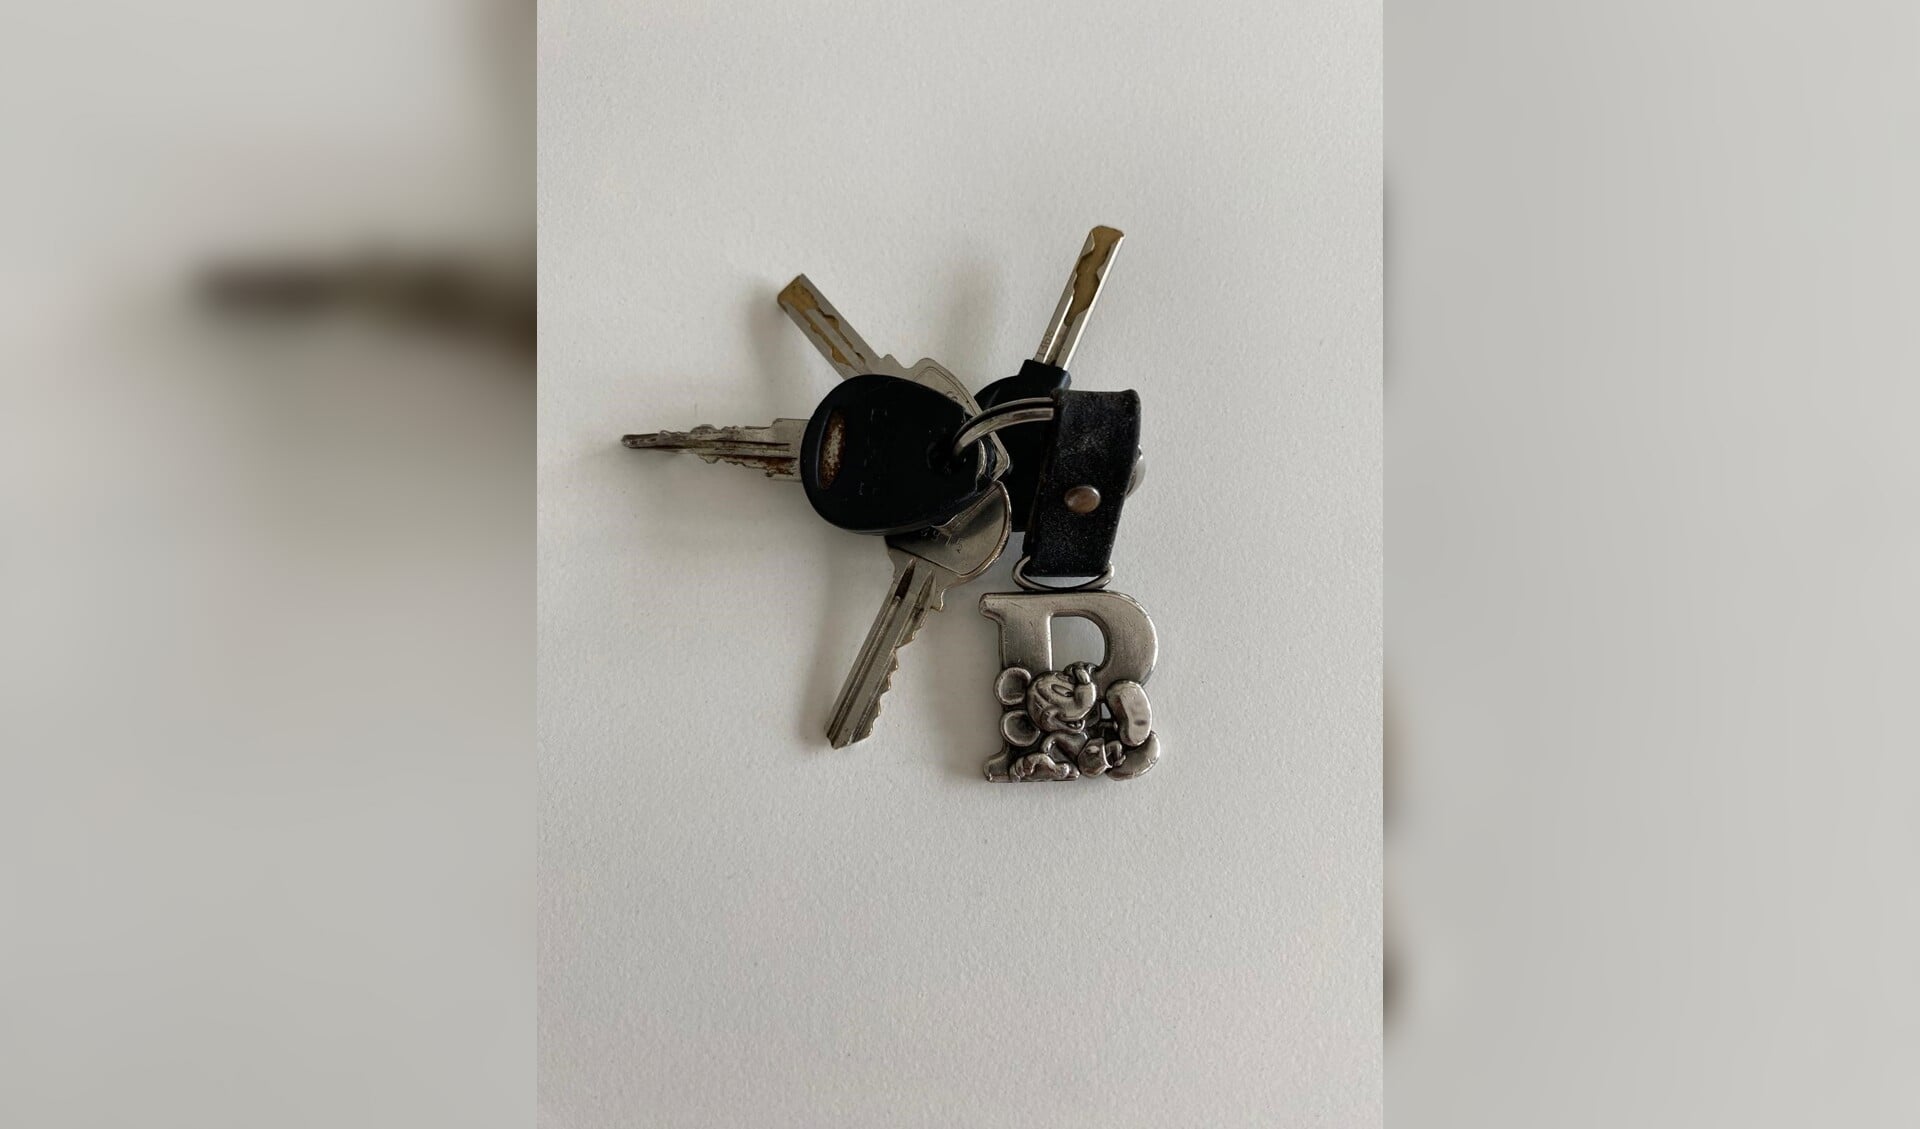 Van wie is deze sleutelbos? 